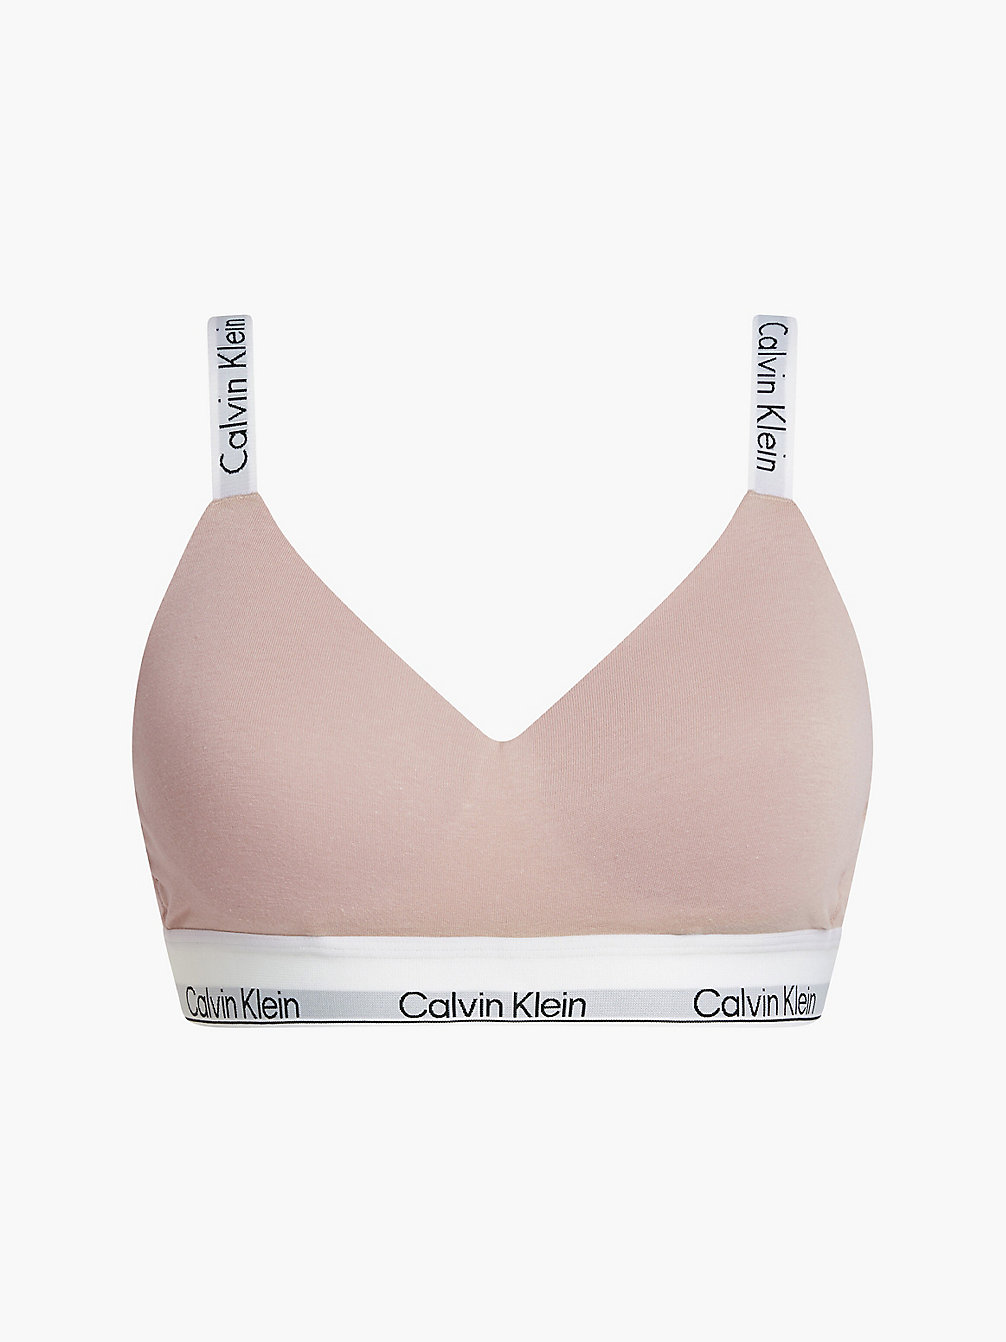 CEDAR Bralette - Modern Cotton undefined women Calvin Klein